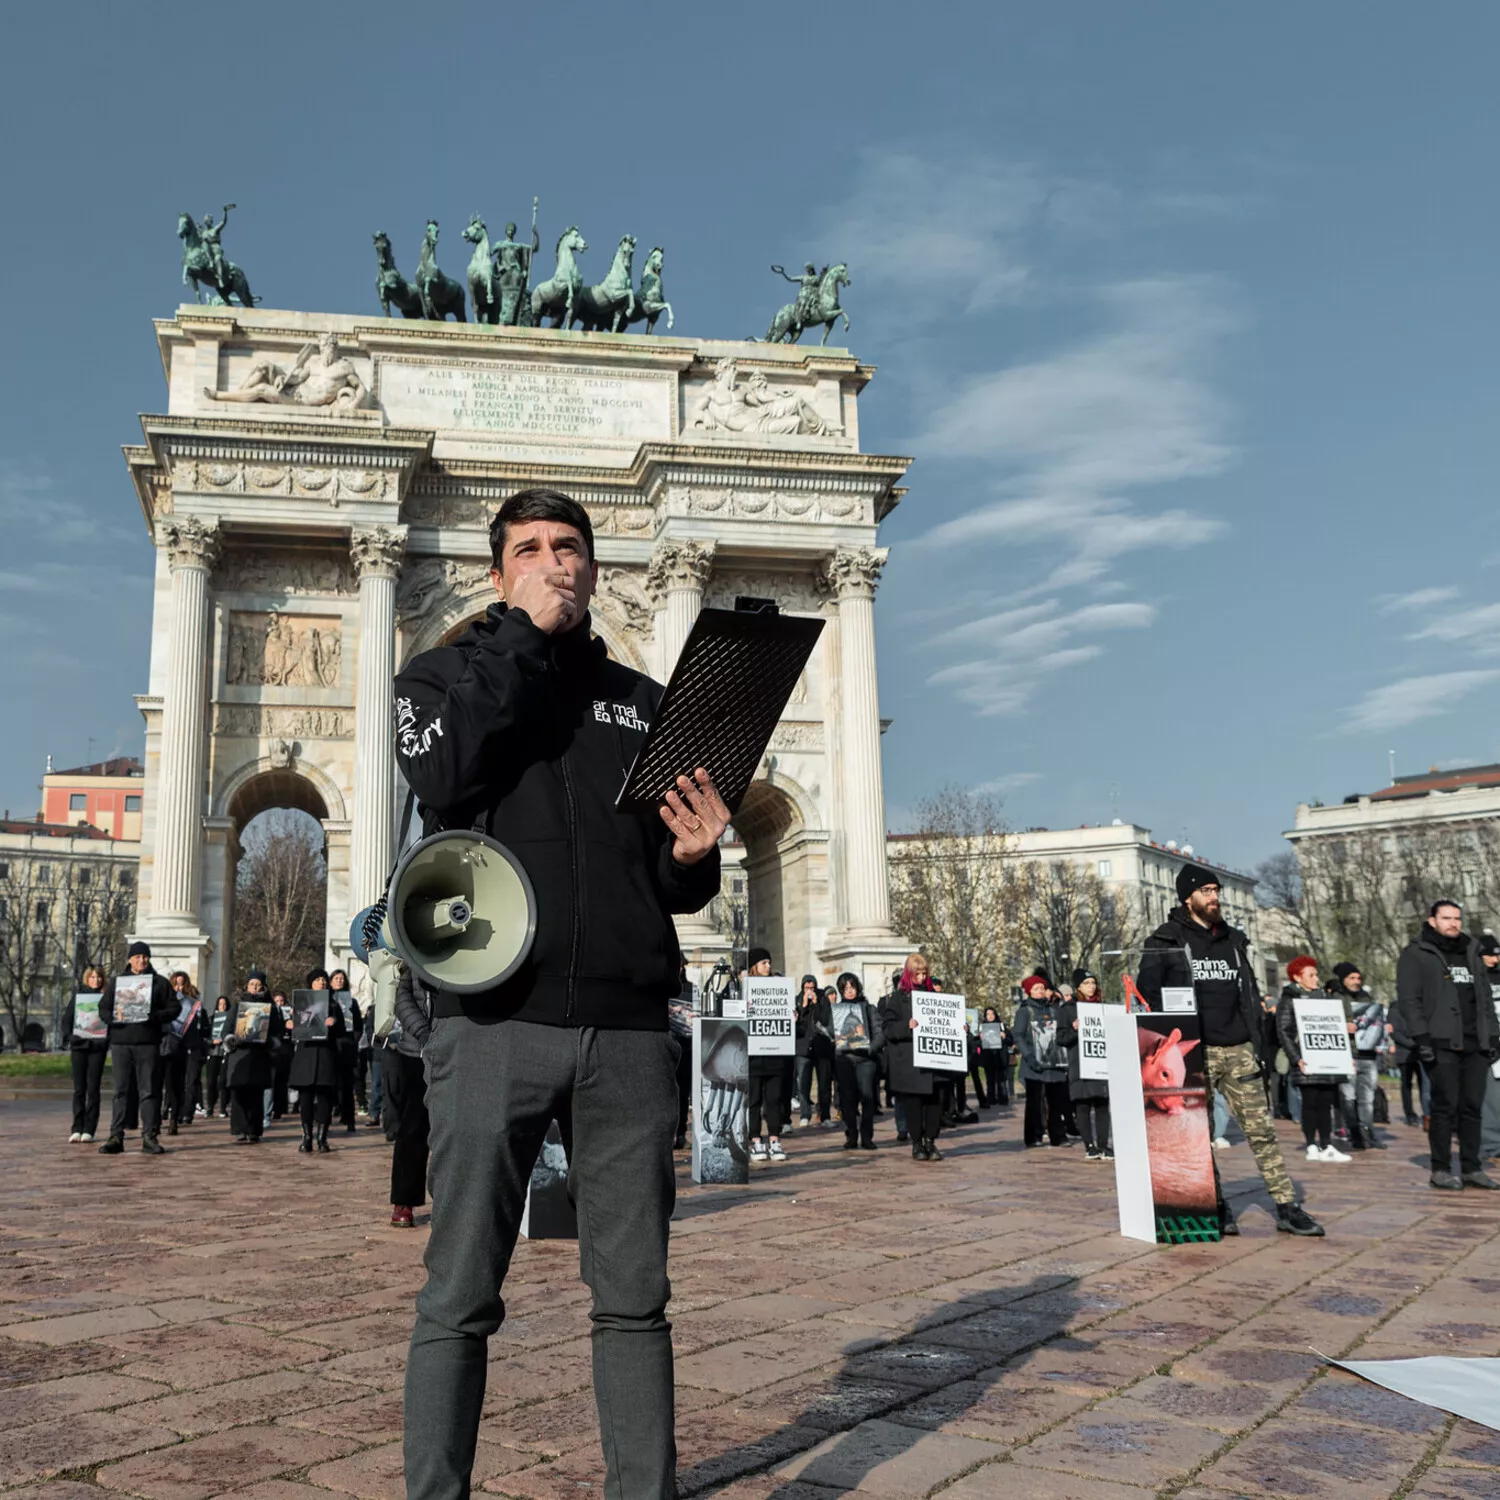 Matteo Cupi spricht während der Demonstration zum Internationalen Tag der Tierrechte in Italien